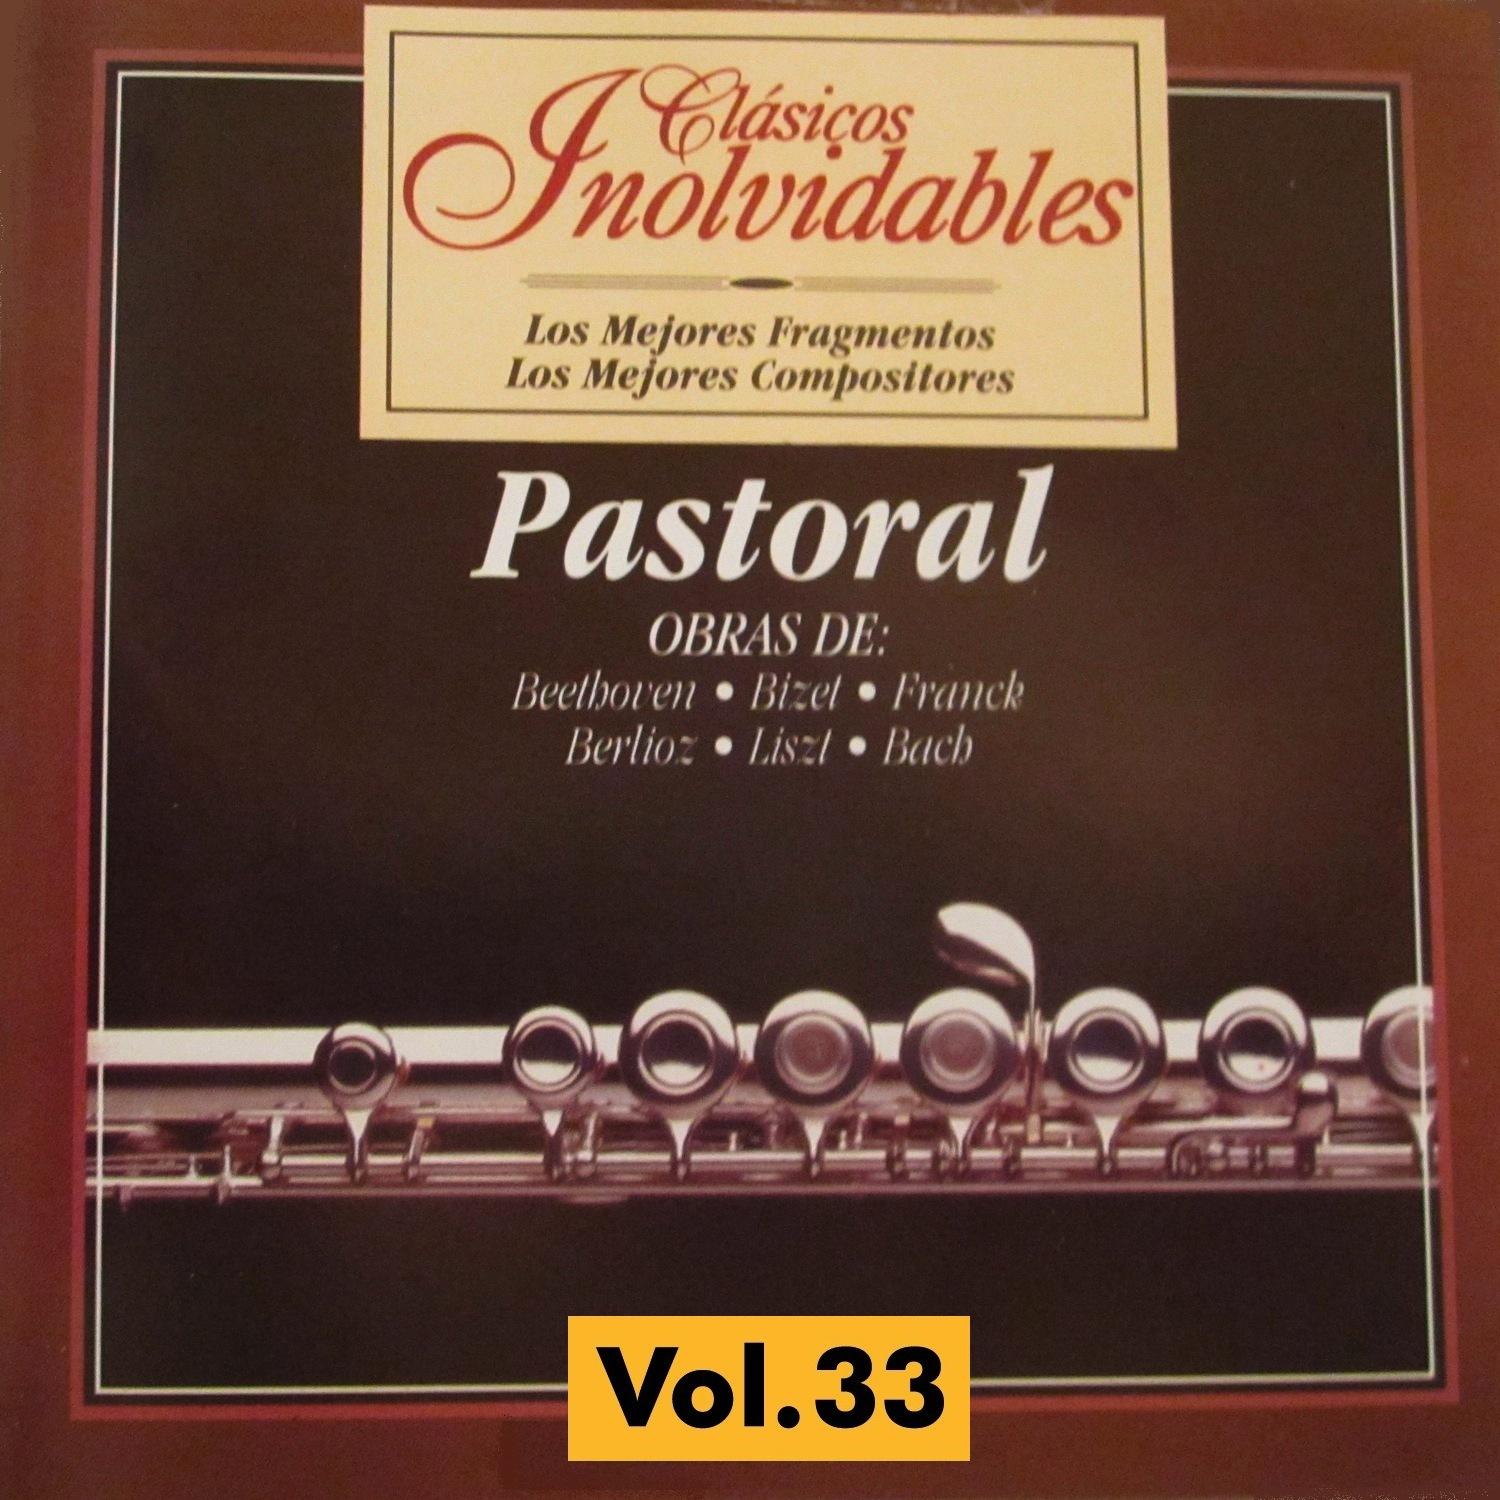 Cla sicos Inolvidables Vol. 33, Pastoral